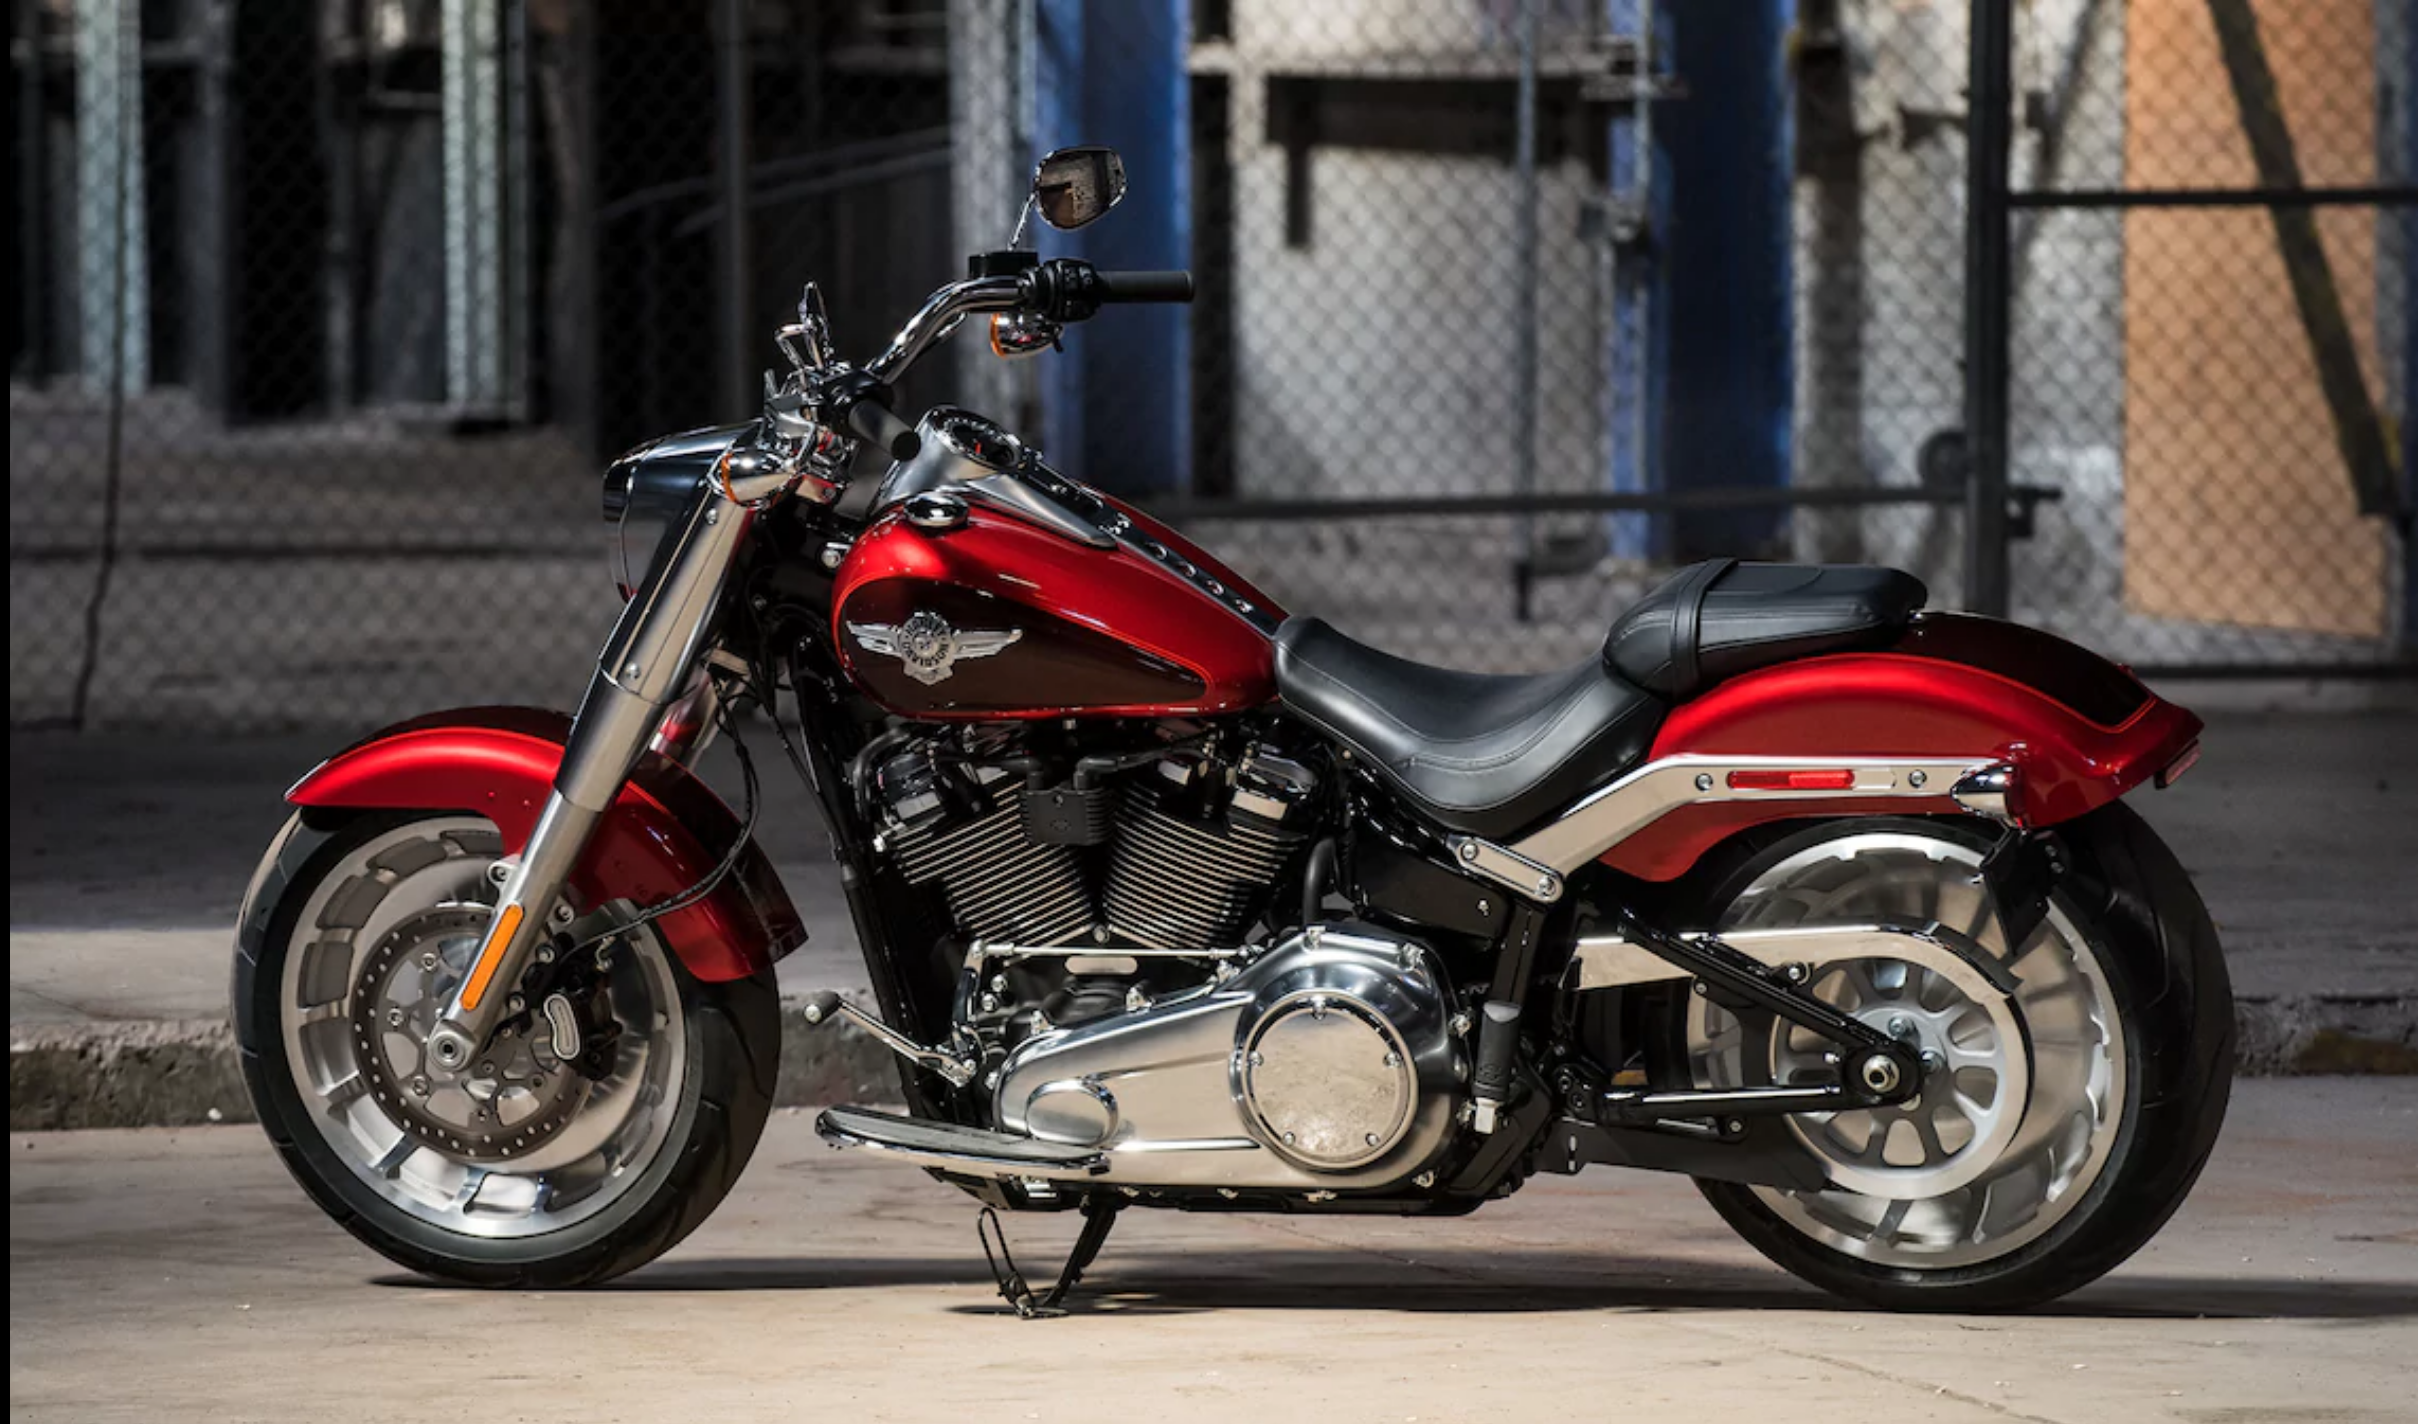 20 Harley Davidson Fat Boy 2020 Price In India Yang Populer